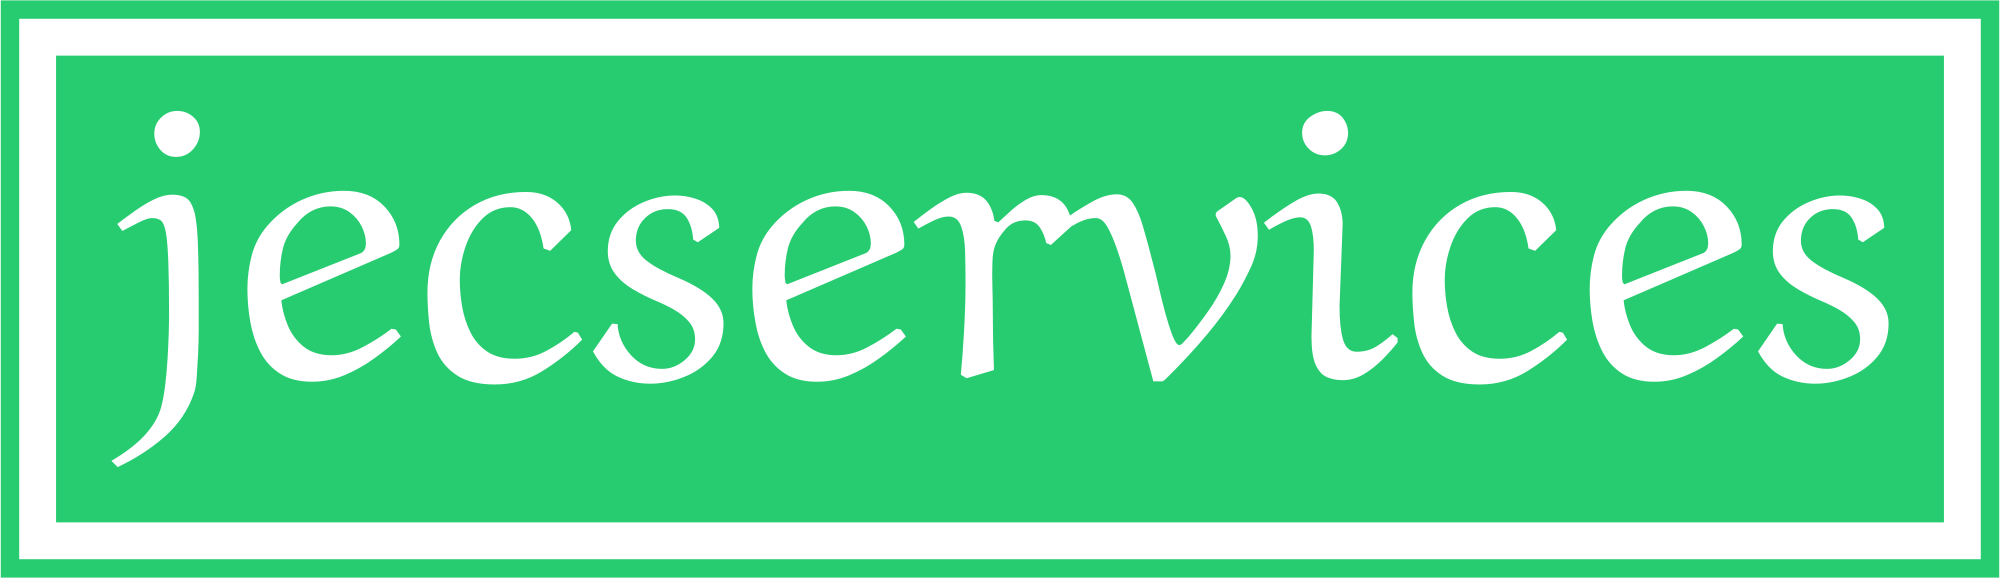 Jec Services